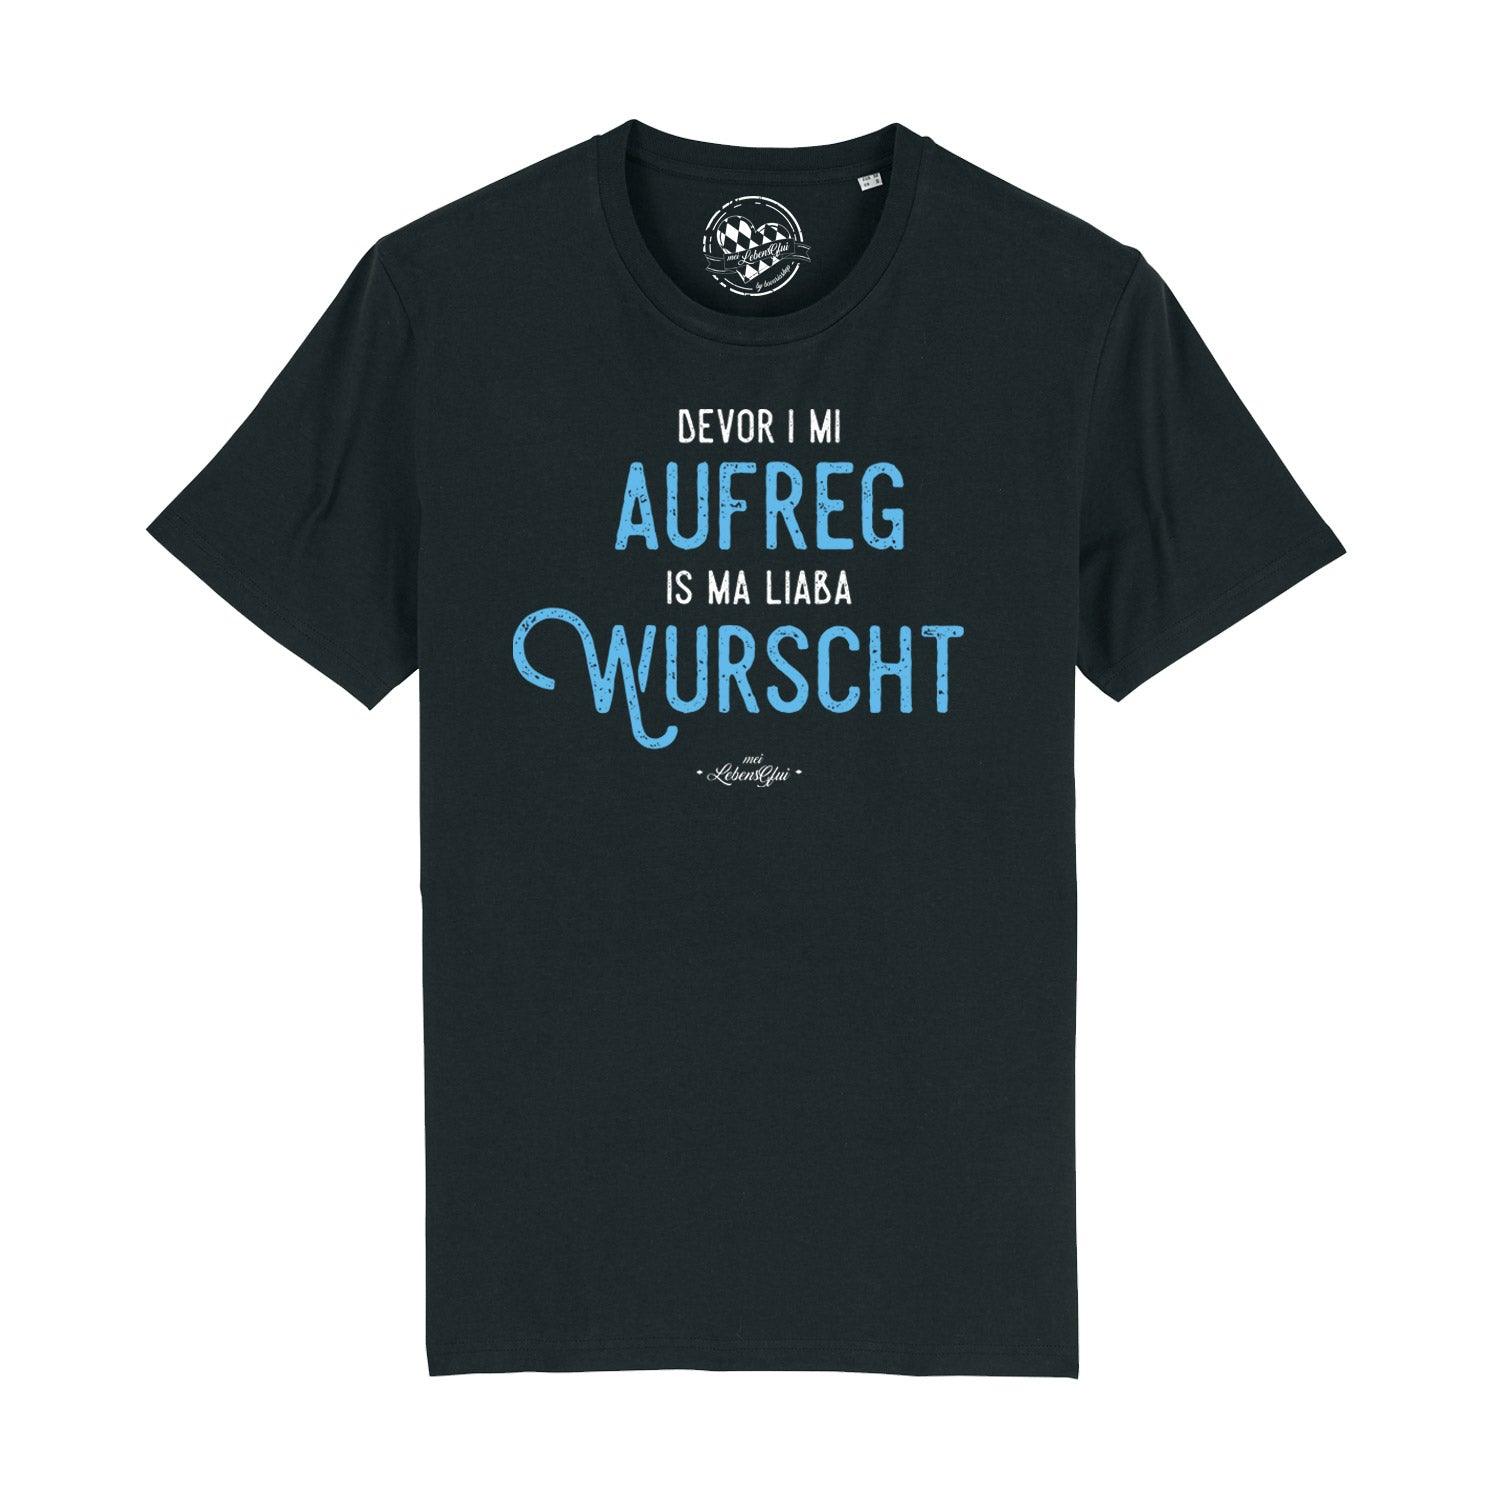 Herren T-Shirt "Bevor i mi aufreg..." - bavariashop - mei LebensGfui